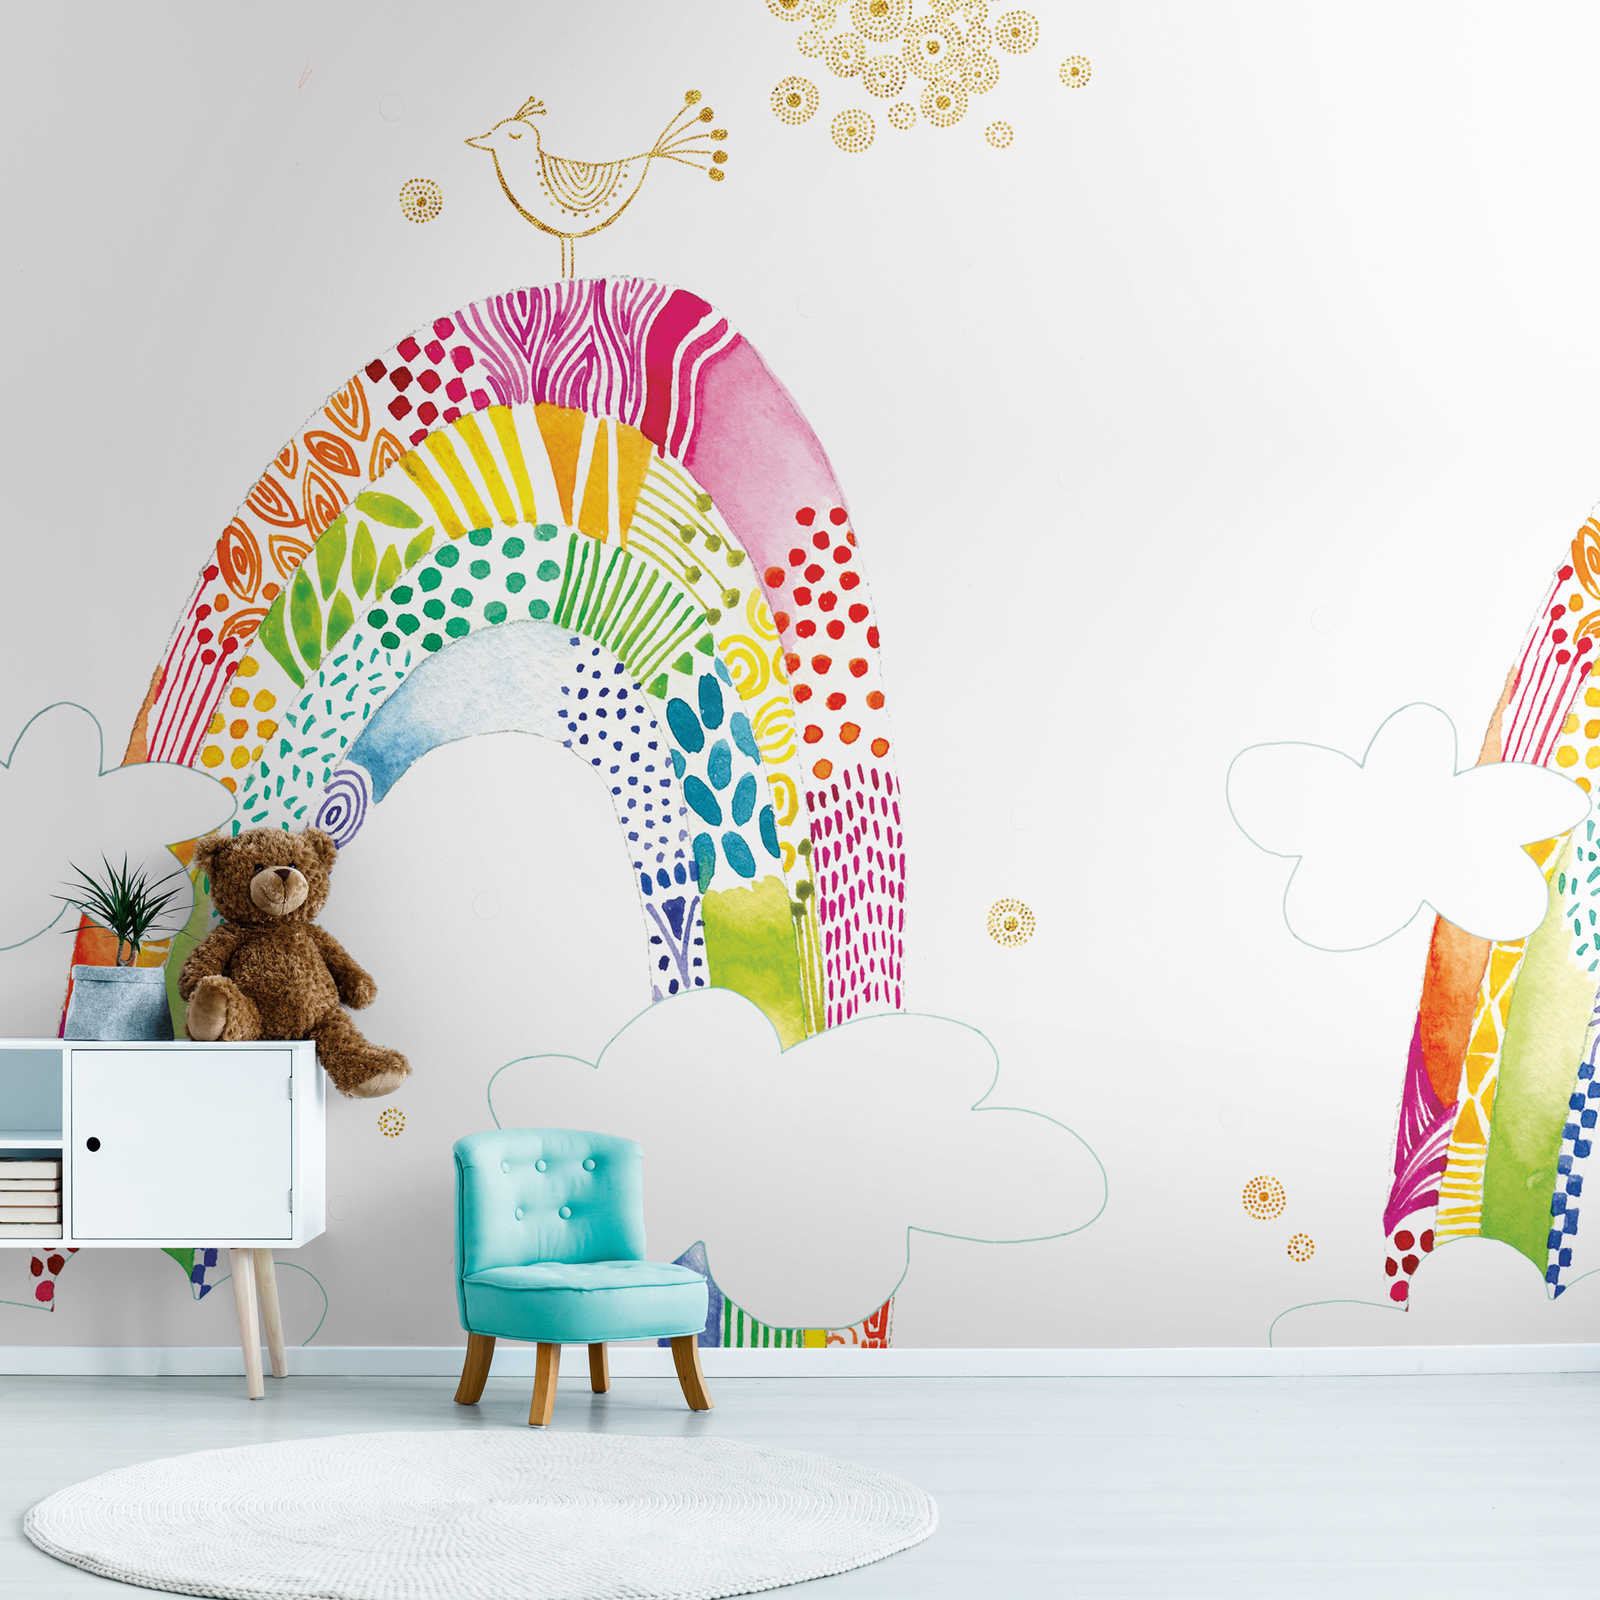 Papier peint enfant avec arc-en-ciel coloré et oiseau - multicolore, blanc, rose
